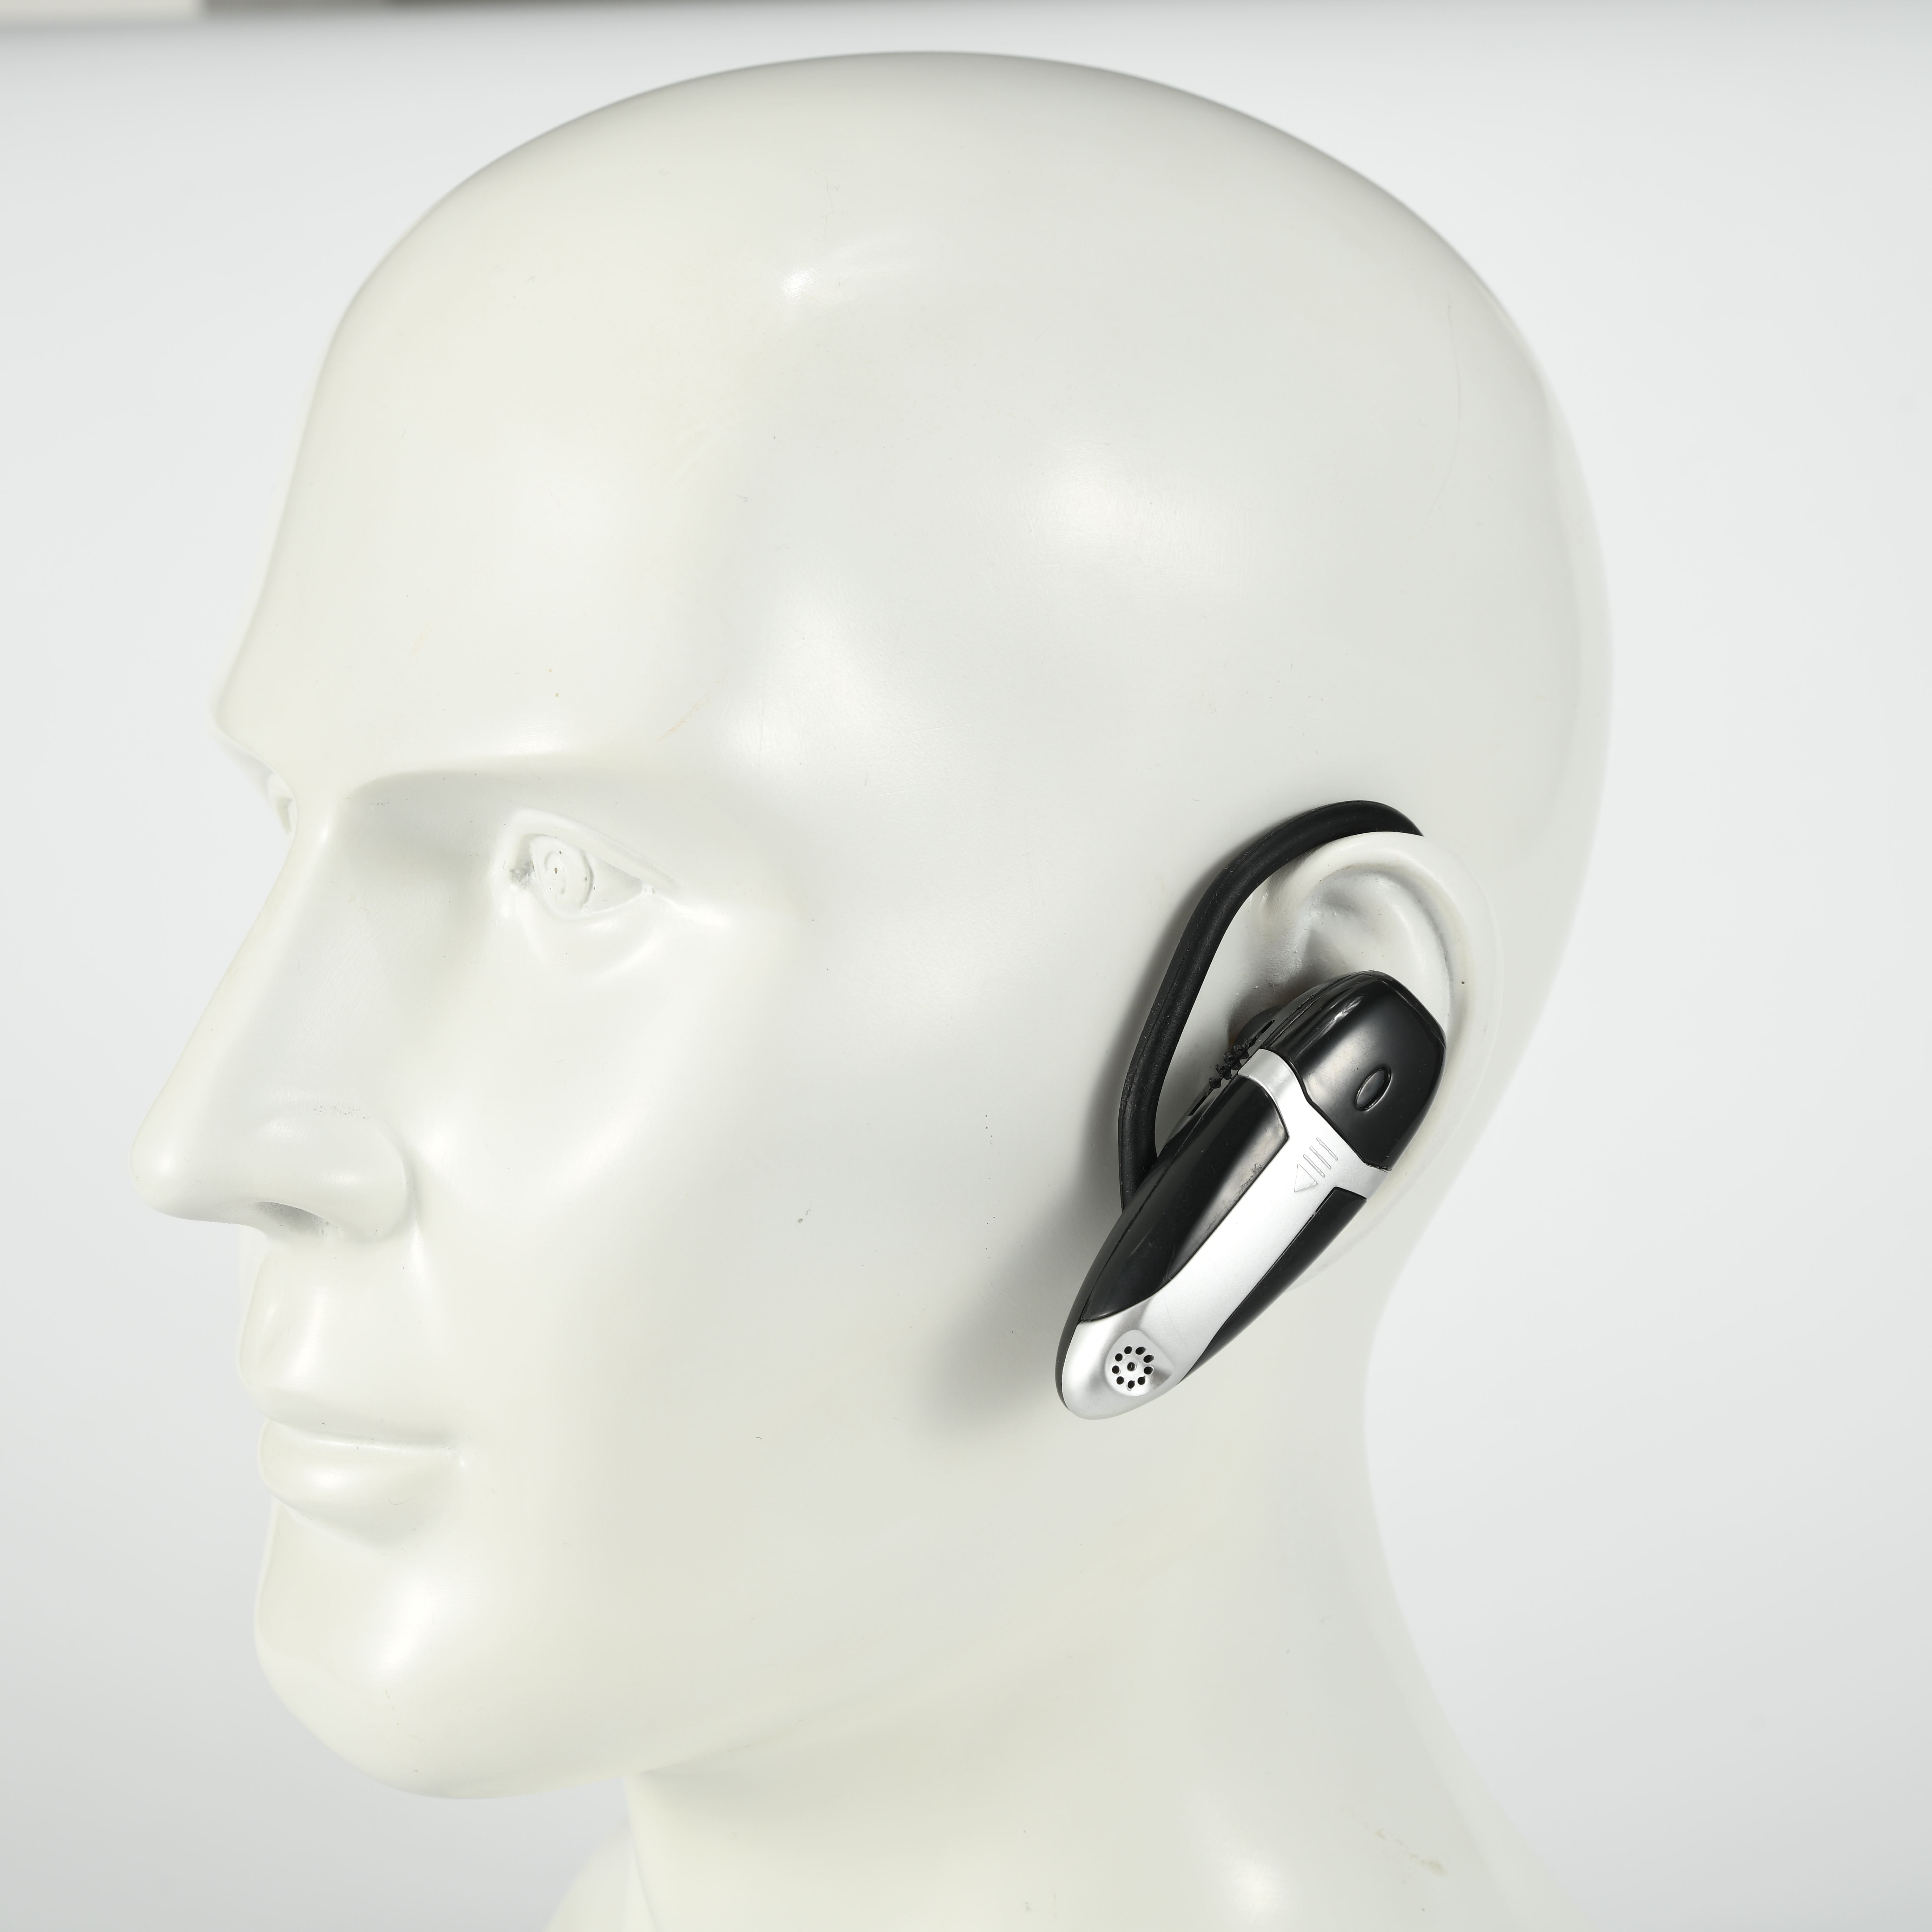 超小型助听器与一般助听器相比较有哪些优点？